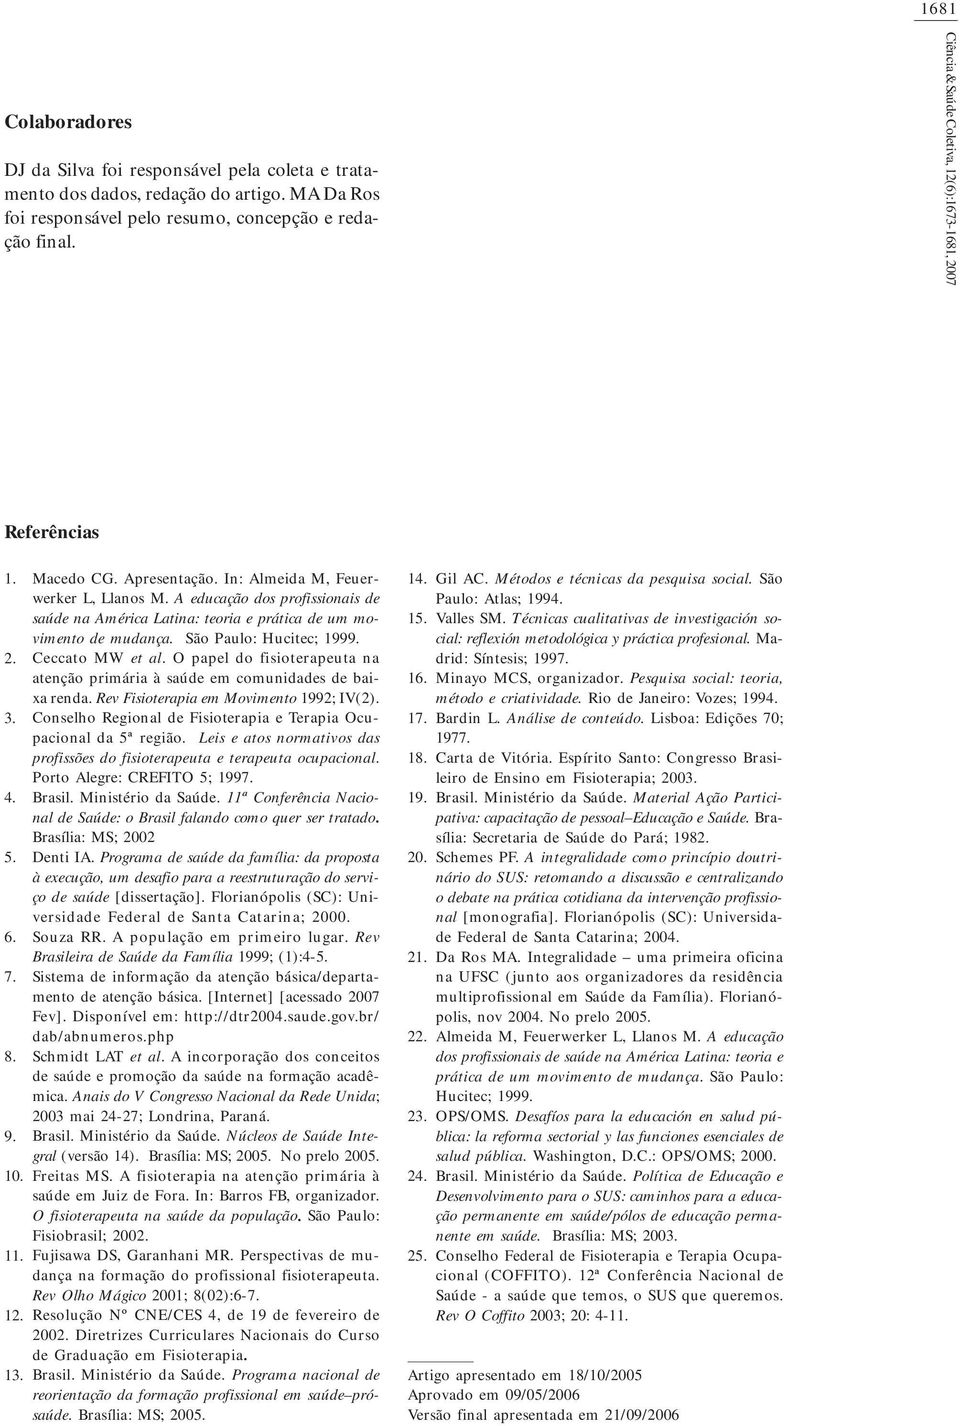 A educação dos profissionais de saúde na América Latina: teoria e prática de um movimento de mudança. São Paulo: Hucitec; 1999. Ceccato MW et al.